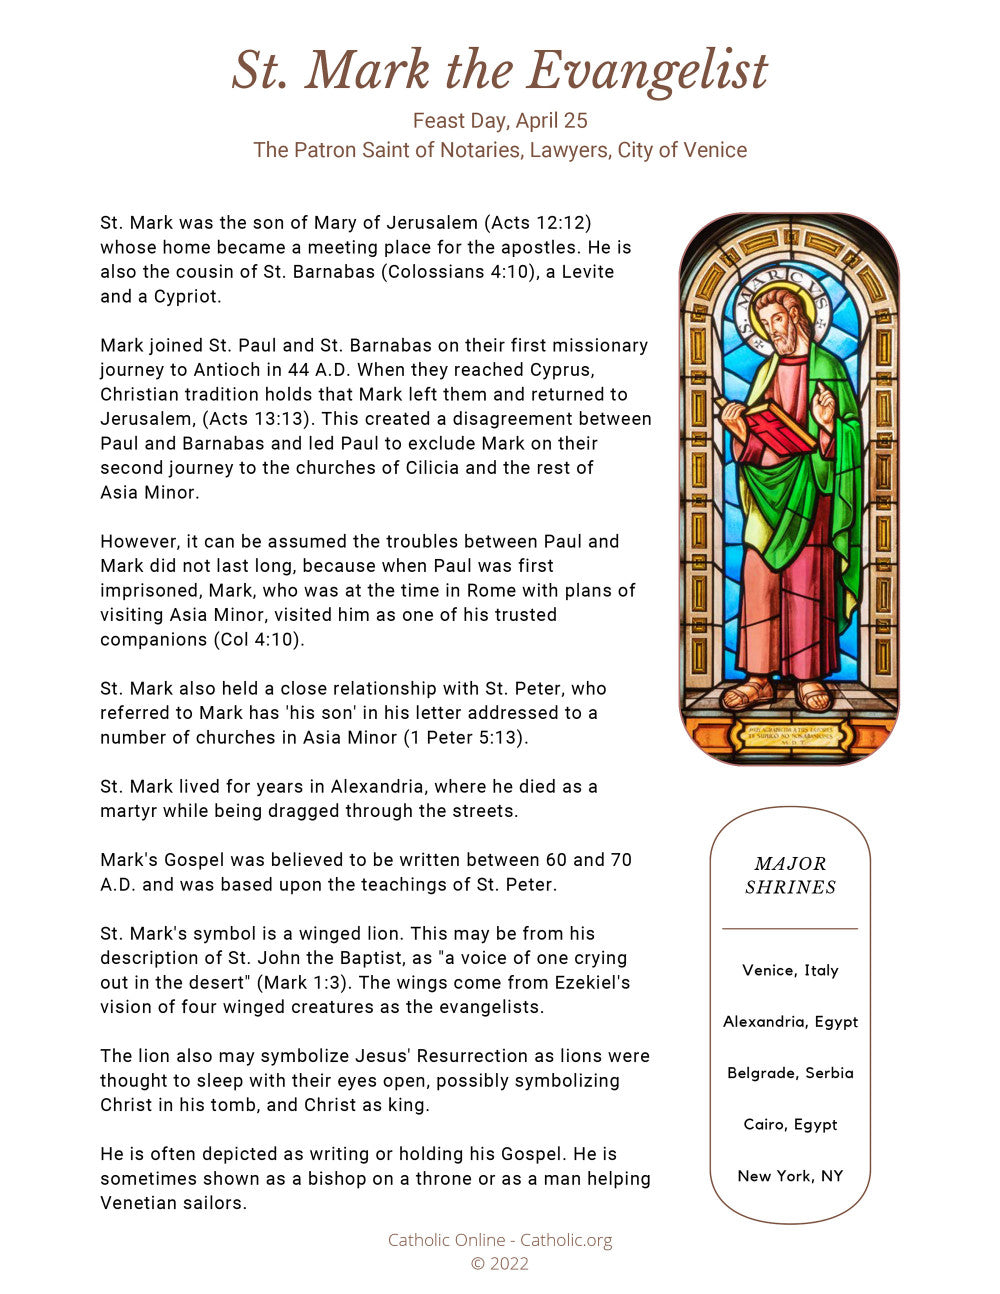 St. Mark the Evangelist bio PDF